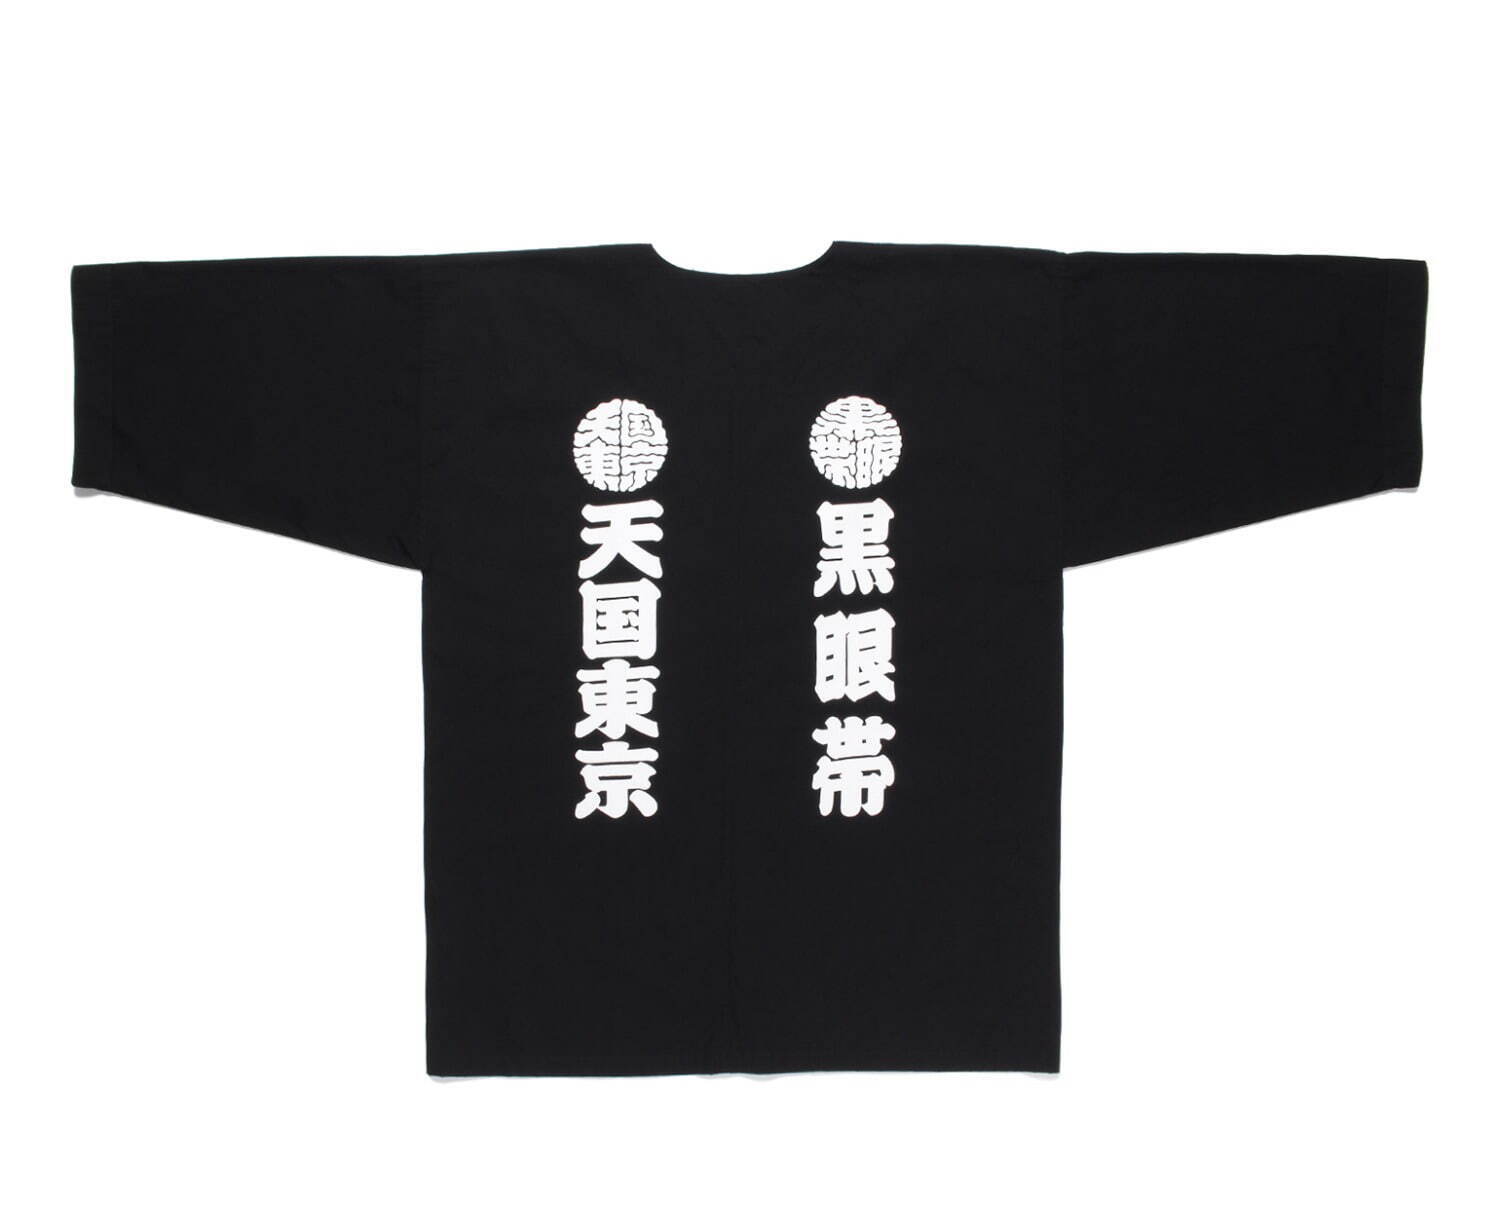 【タグ付き】ブラックアイパッチ×ワコマリア☆コラボ Tシャツ 黒眼帯 天国東京古着屋Wrappin